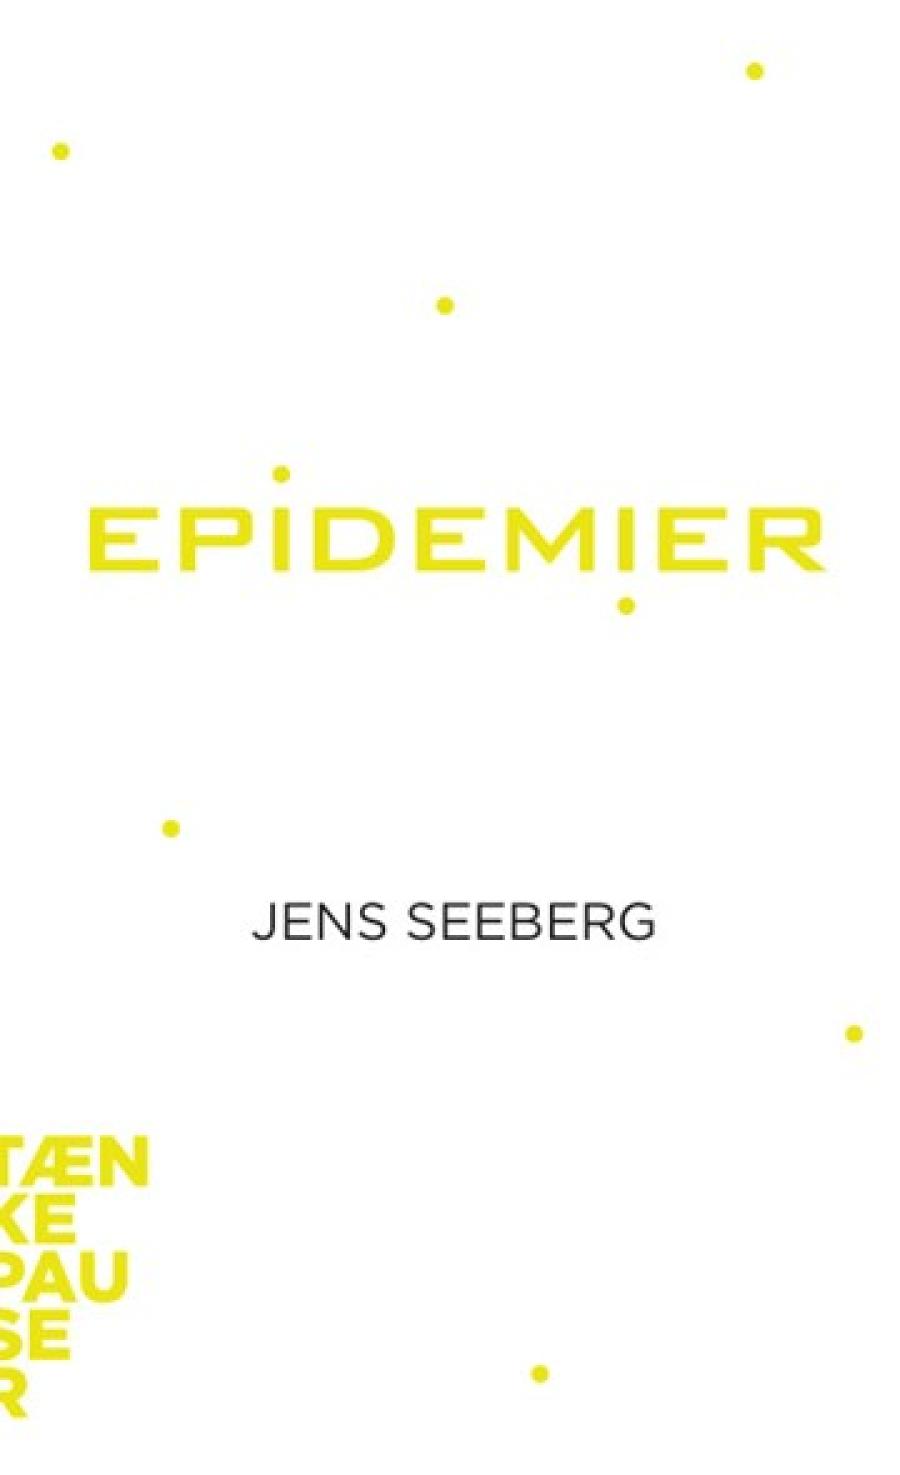 Forside af: "Epidemier" af Jens Seeberg